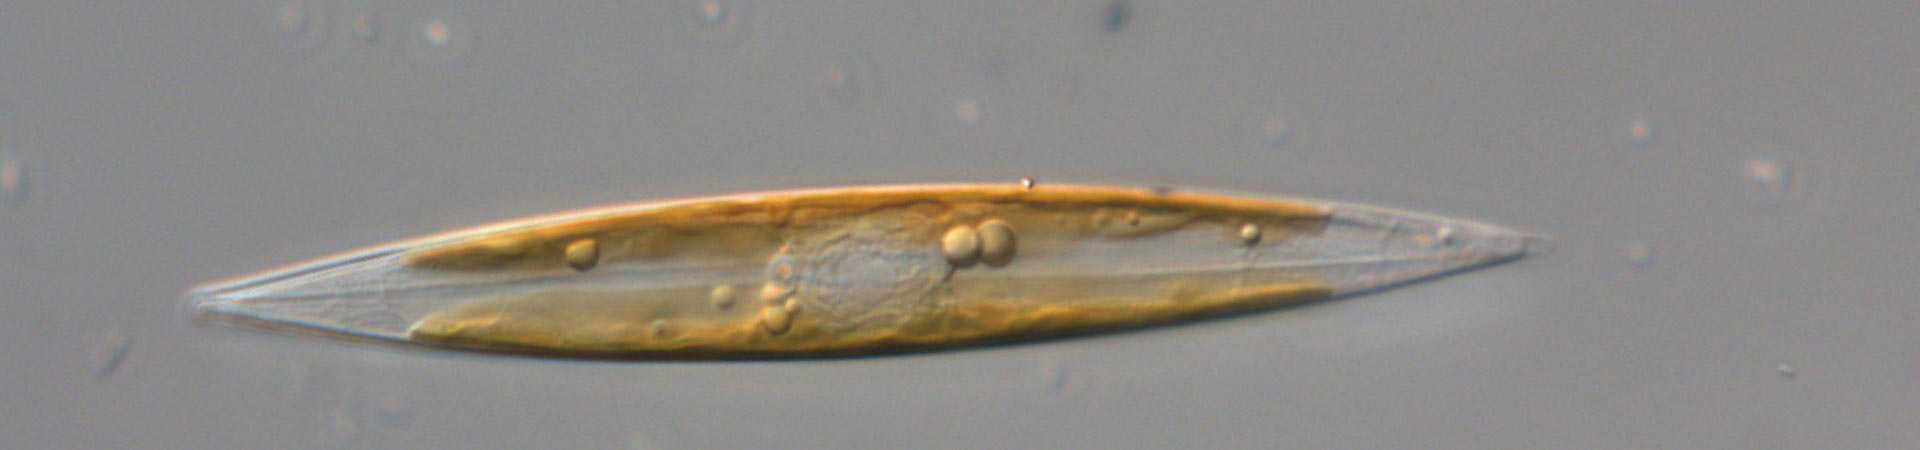 Microscope image of H. vitrea by Cecilia Rad Menendez